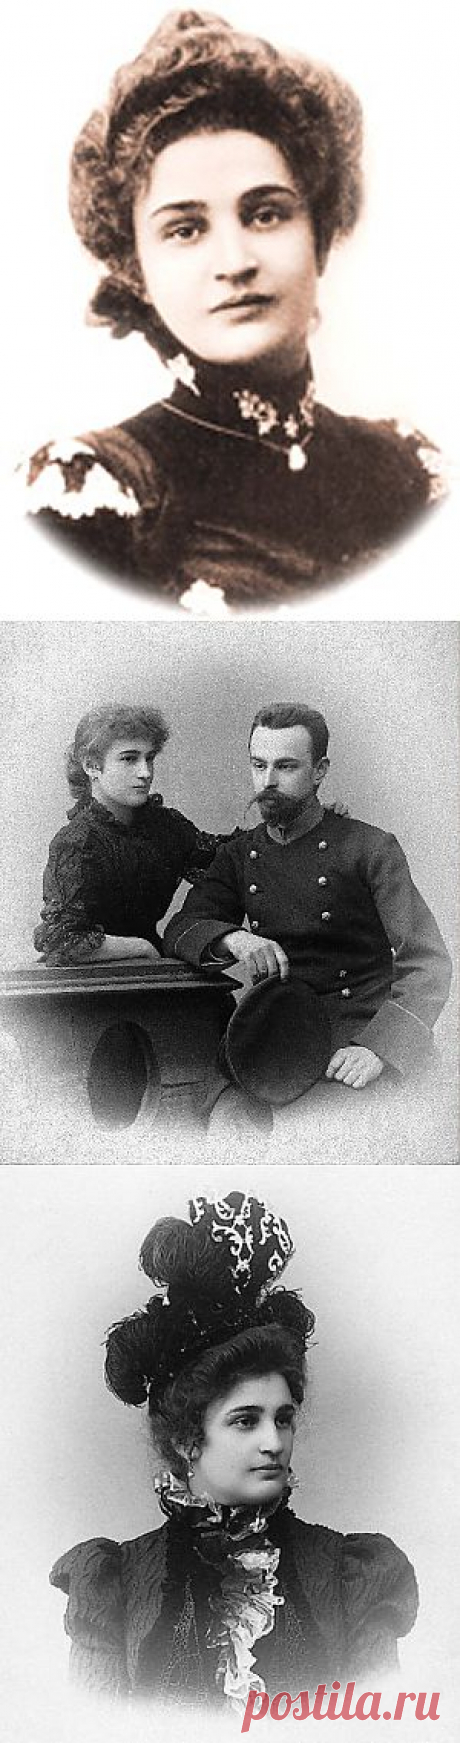 Поэтесса Мирра Лохвицкая (1869-1905).